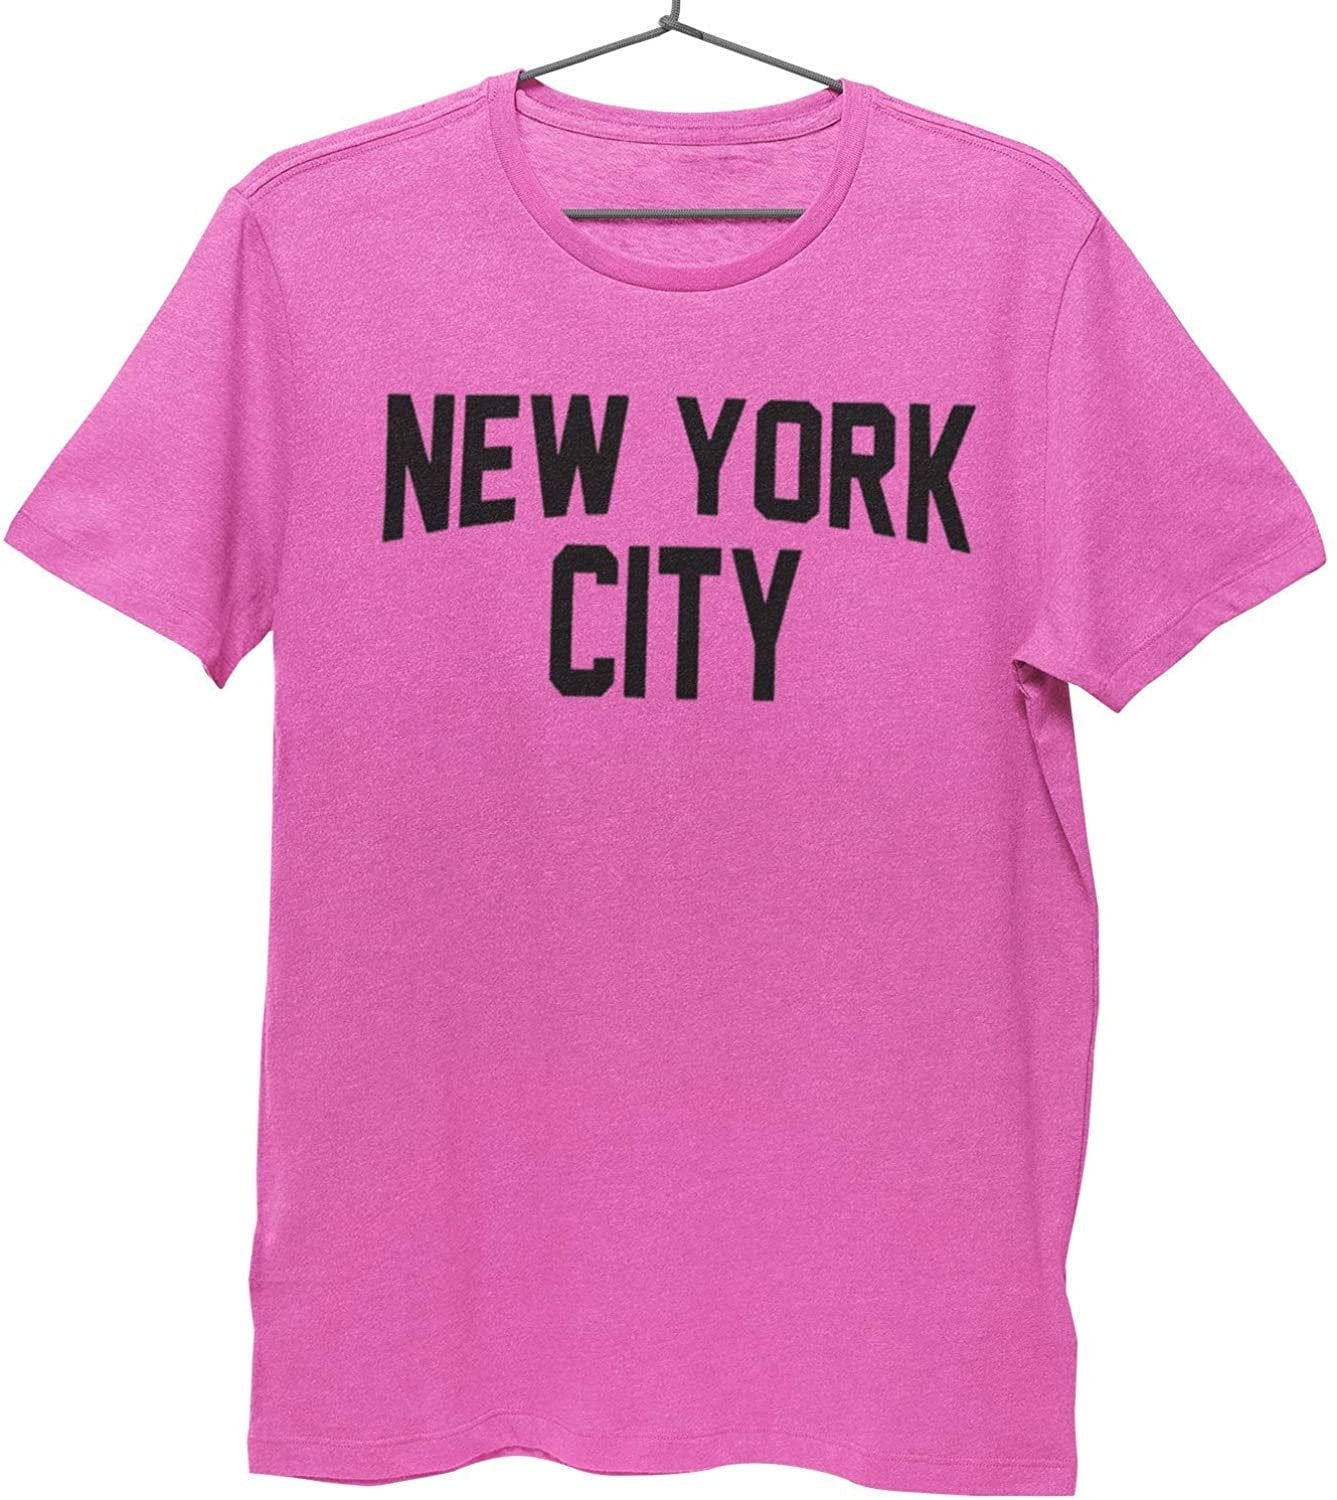 T-shirt emblématique de la ville de New York pour enfants // Sérigraphié